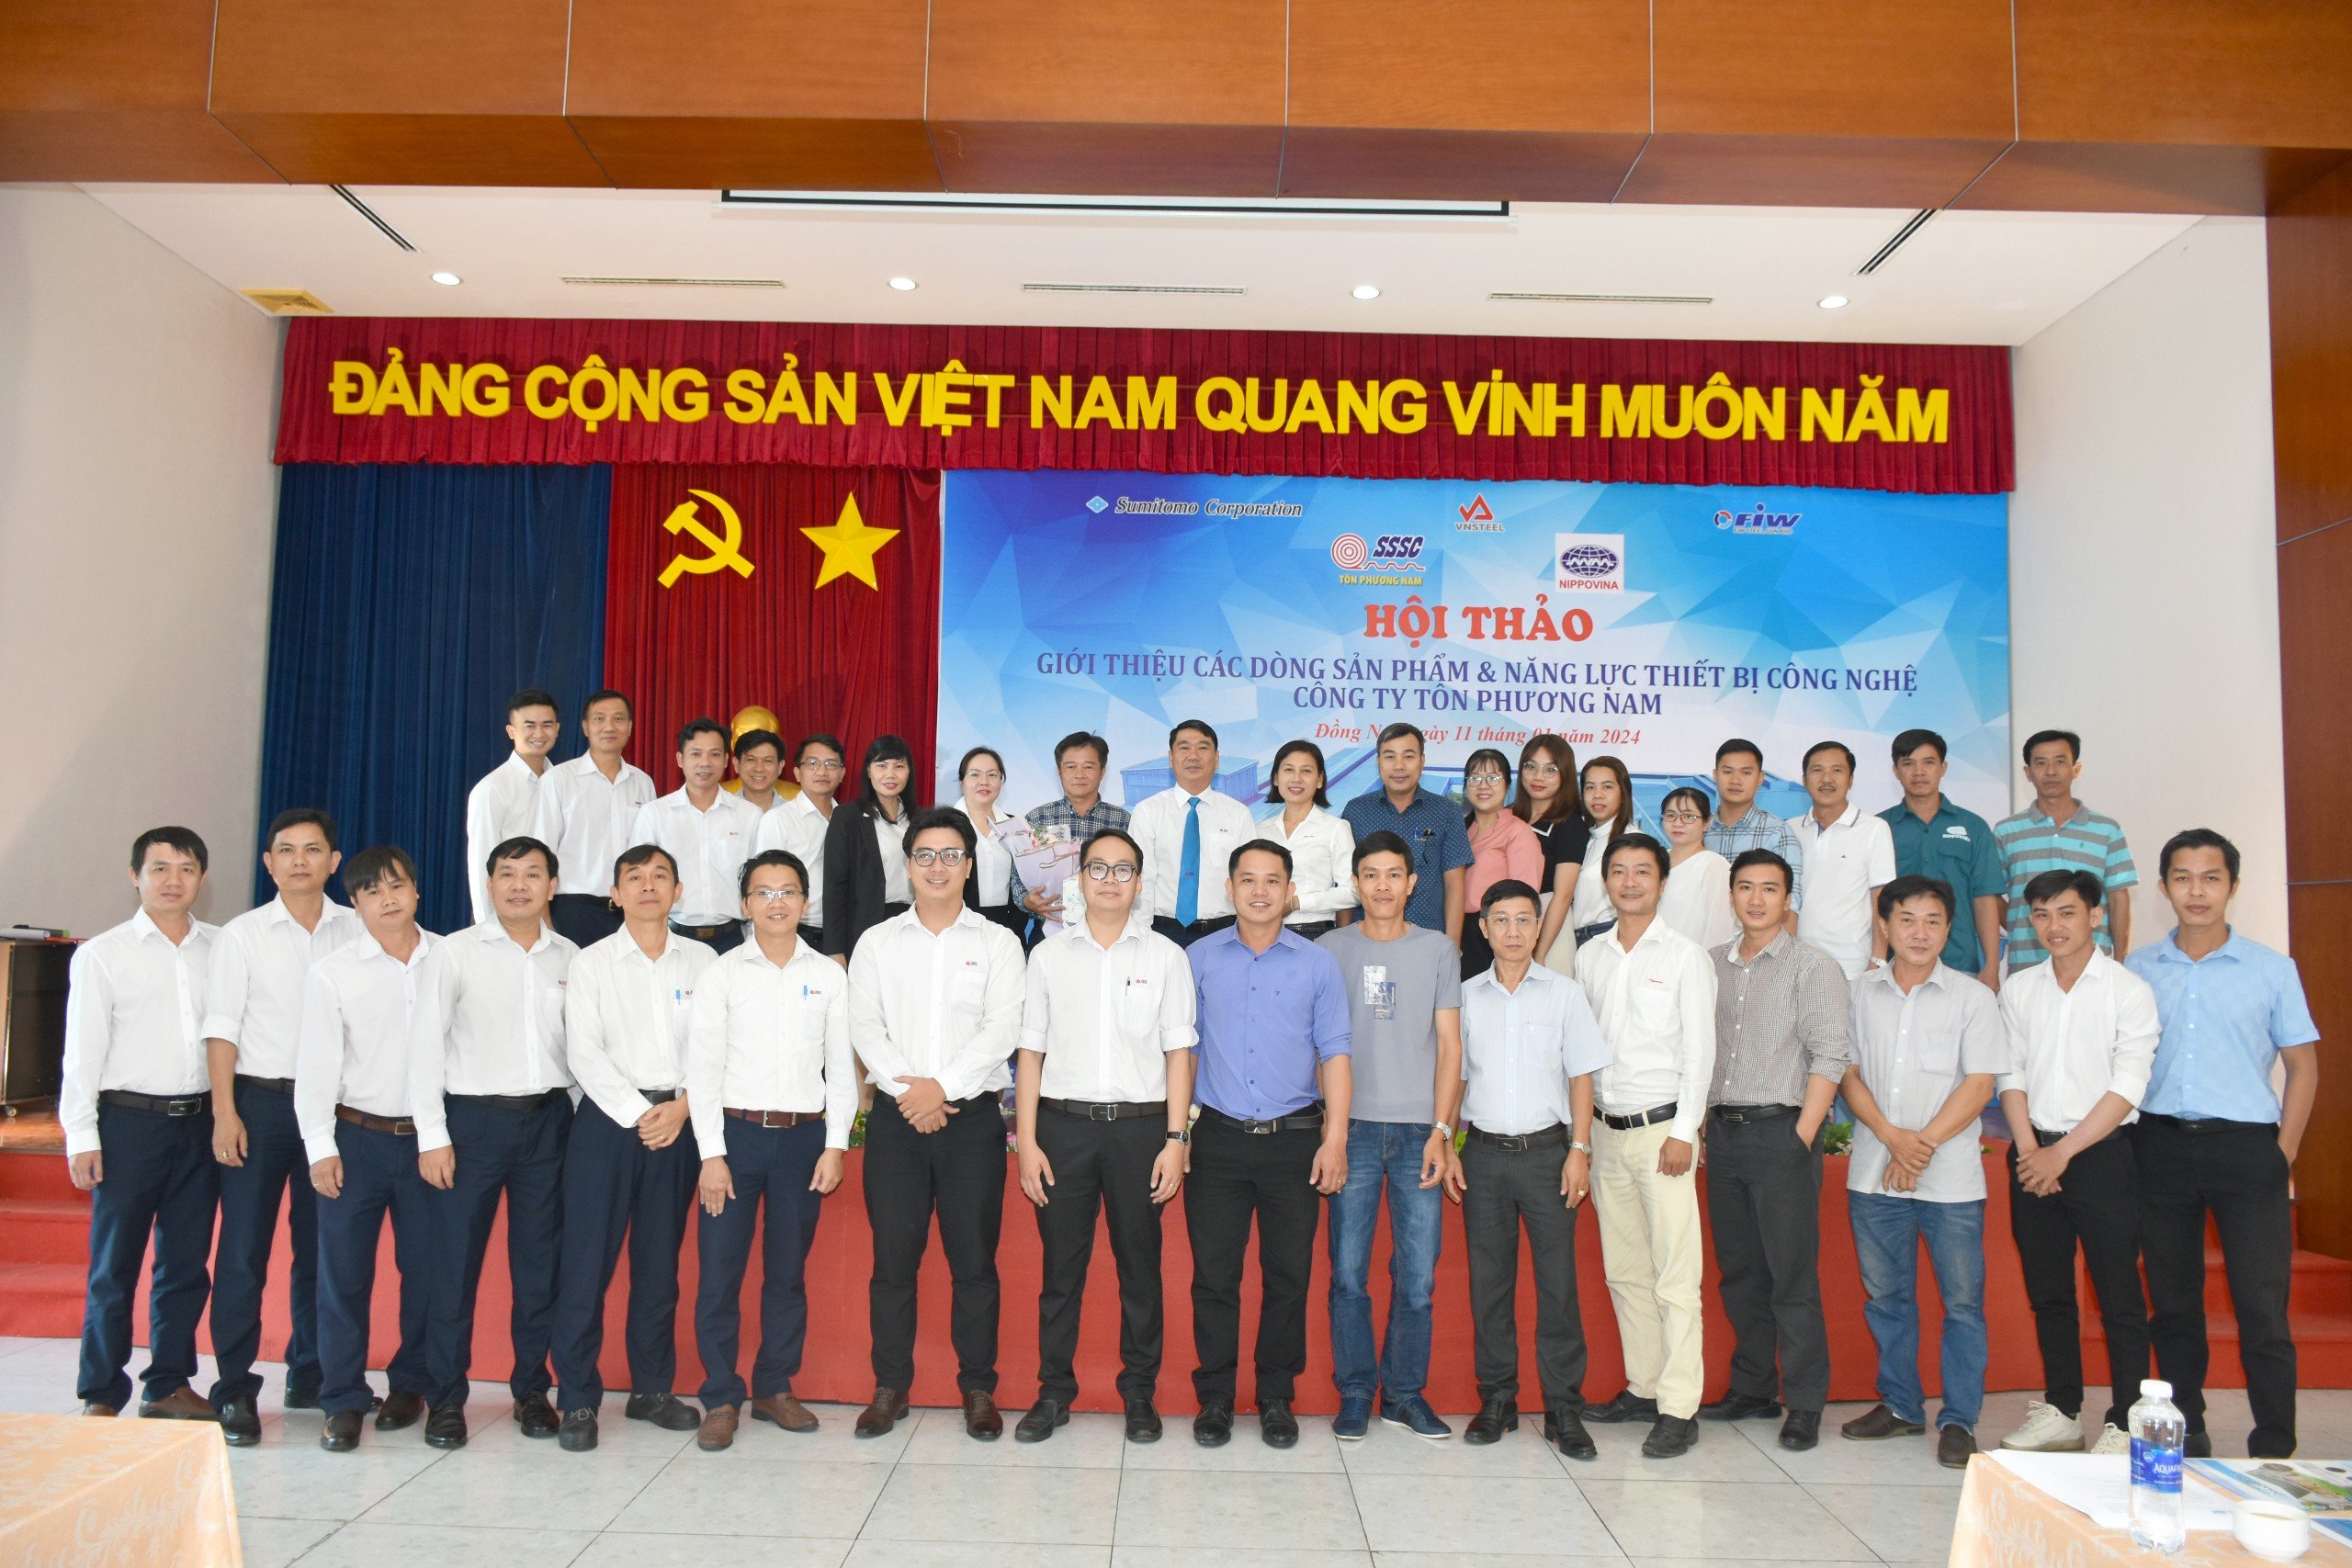 NIPPOVINA đến thăm và tham dự Hội thảo giới thiệu các dòng sản phẩm và năng lực thiết bị công nghệ của Công ty Tôn Phương Nam